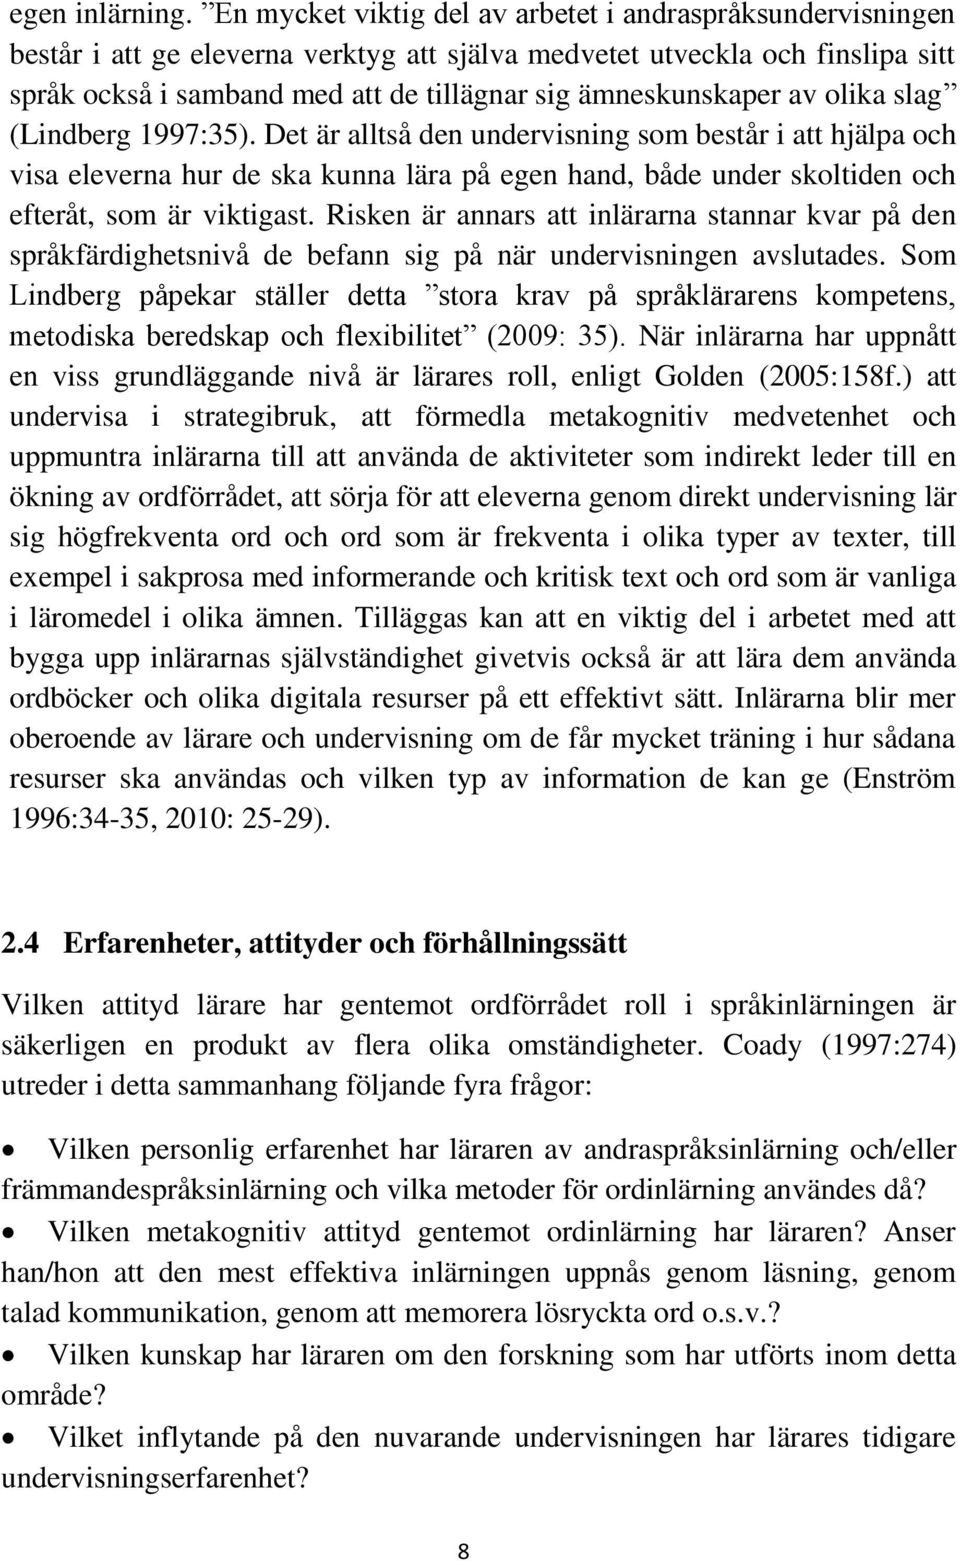 ämneskunskaper av olika slag (Lindberg 1997:35).